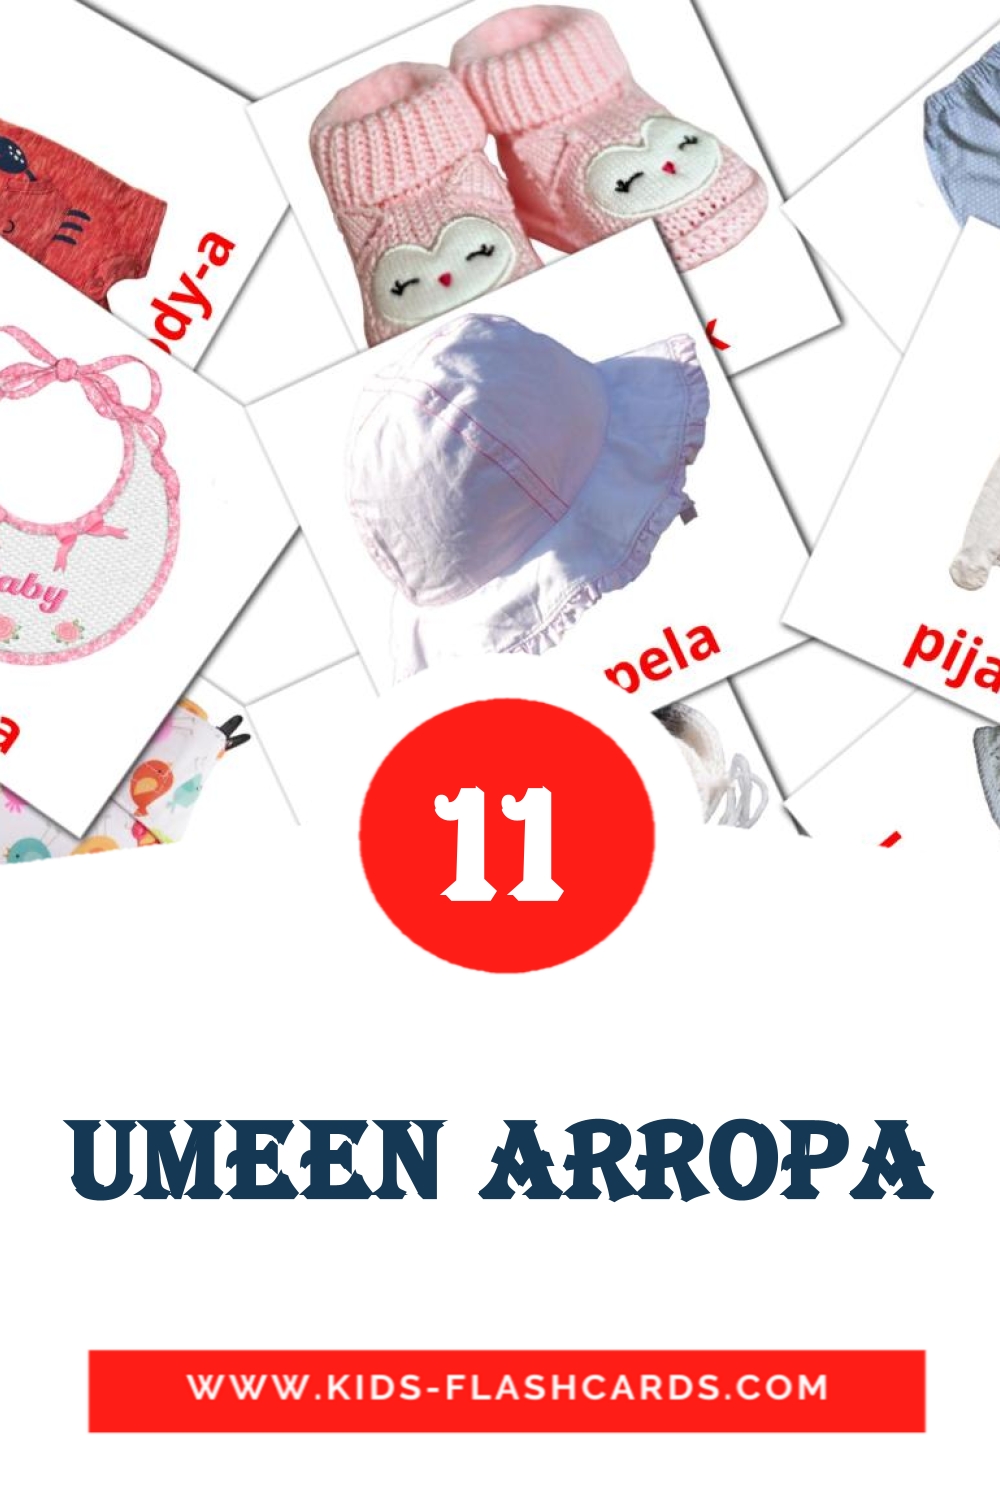 11 umeen arropa fotokaarten voor kleuters in het baskisch